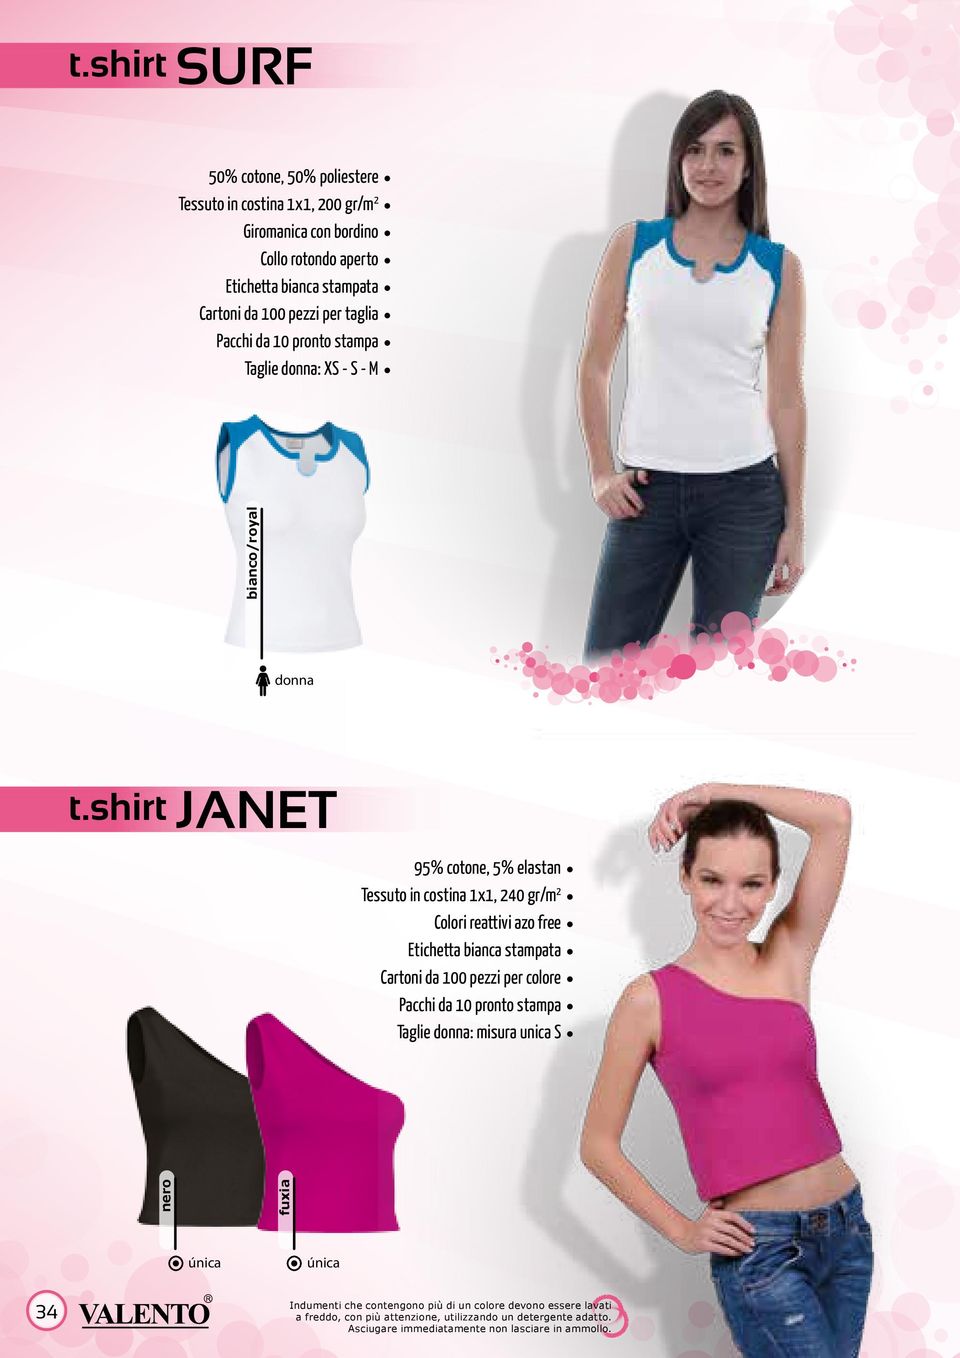 shirt JANET 95% cotone, 5% elastan Tessuto in costina 1x1, 240 gr/m 2 Colori reattivi azo free Cartoni da 100 pezzi per